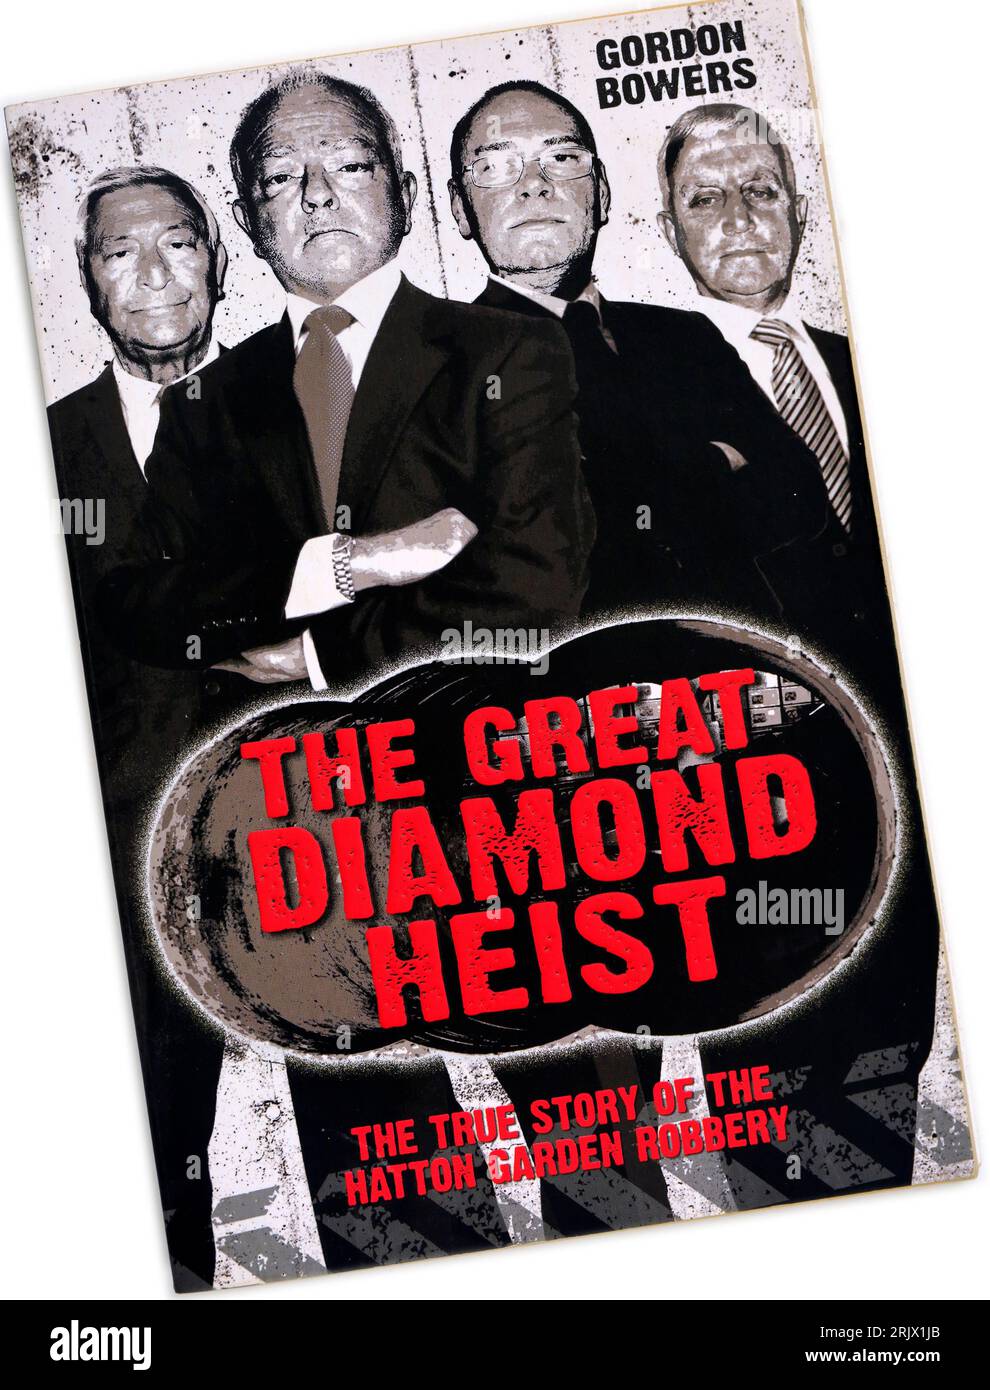 The Great Diamond Heist - par Gordon Bowers. Couverture de livre. Configuration du studio. La vraie histoire du vol Hatton Garden. Banque D'Images